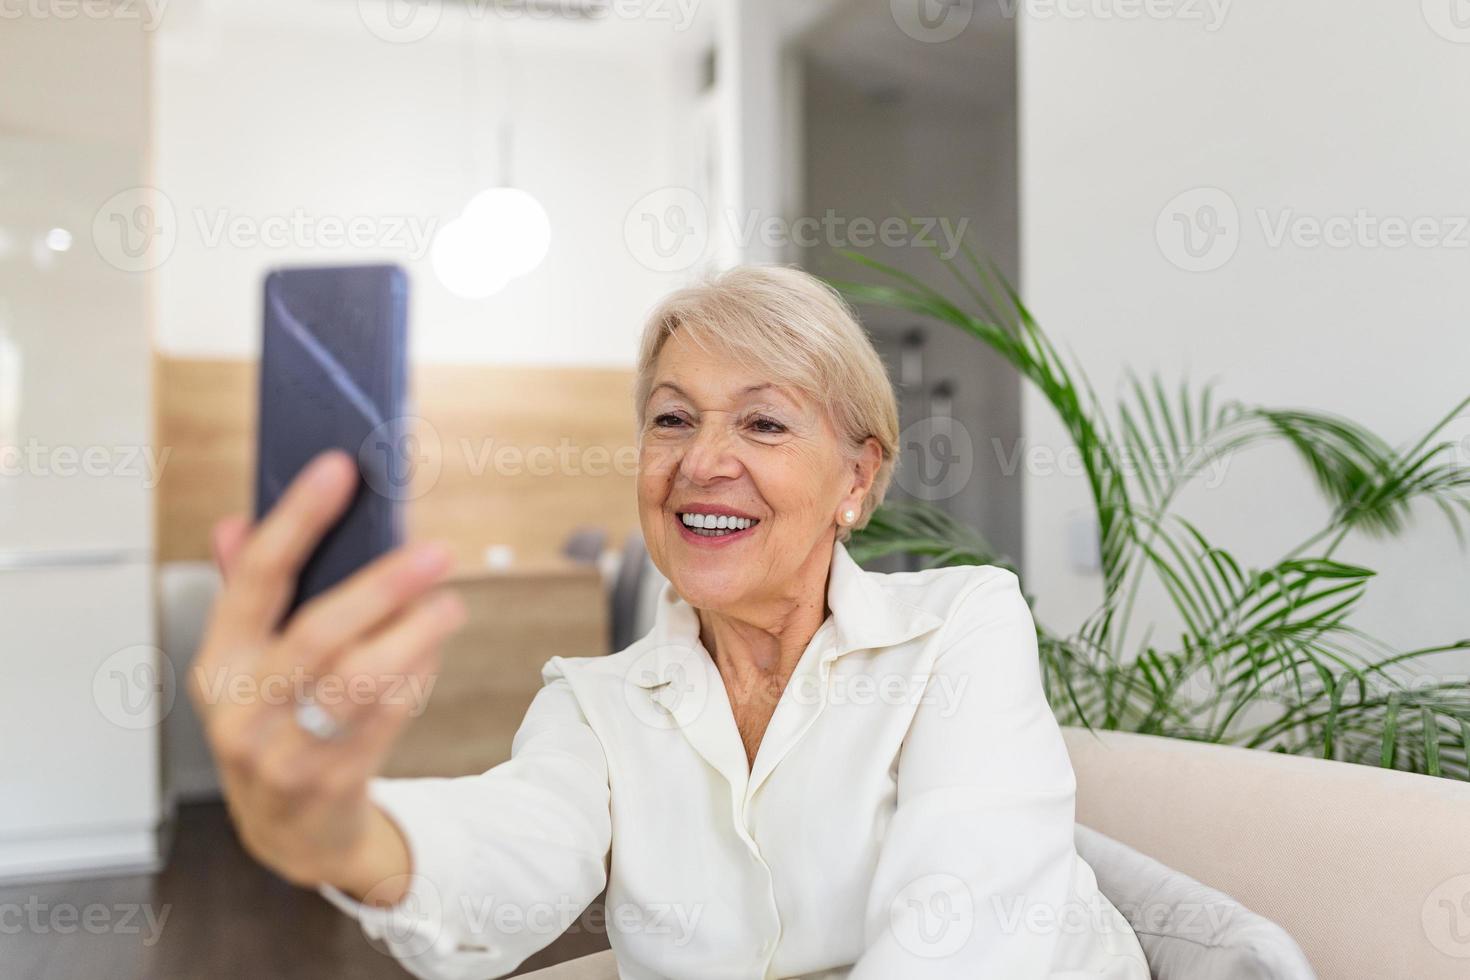 vovó tirando selfies em casa na sala de estar. close-up retrato de feliz alegre delicioso encantador linda senhora idosa vovó vovó tomando uma selfie. conceito de velhice, aposentadoria e pessoas foto